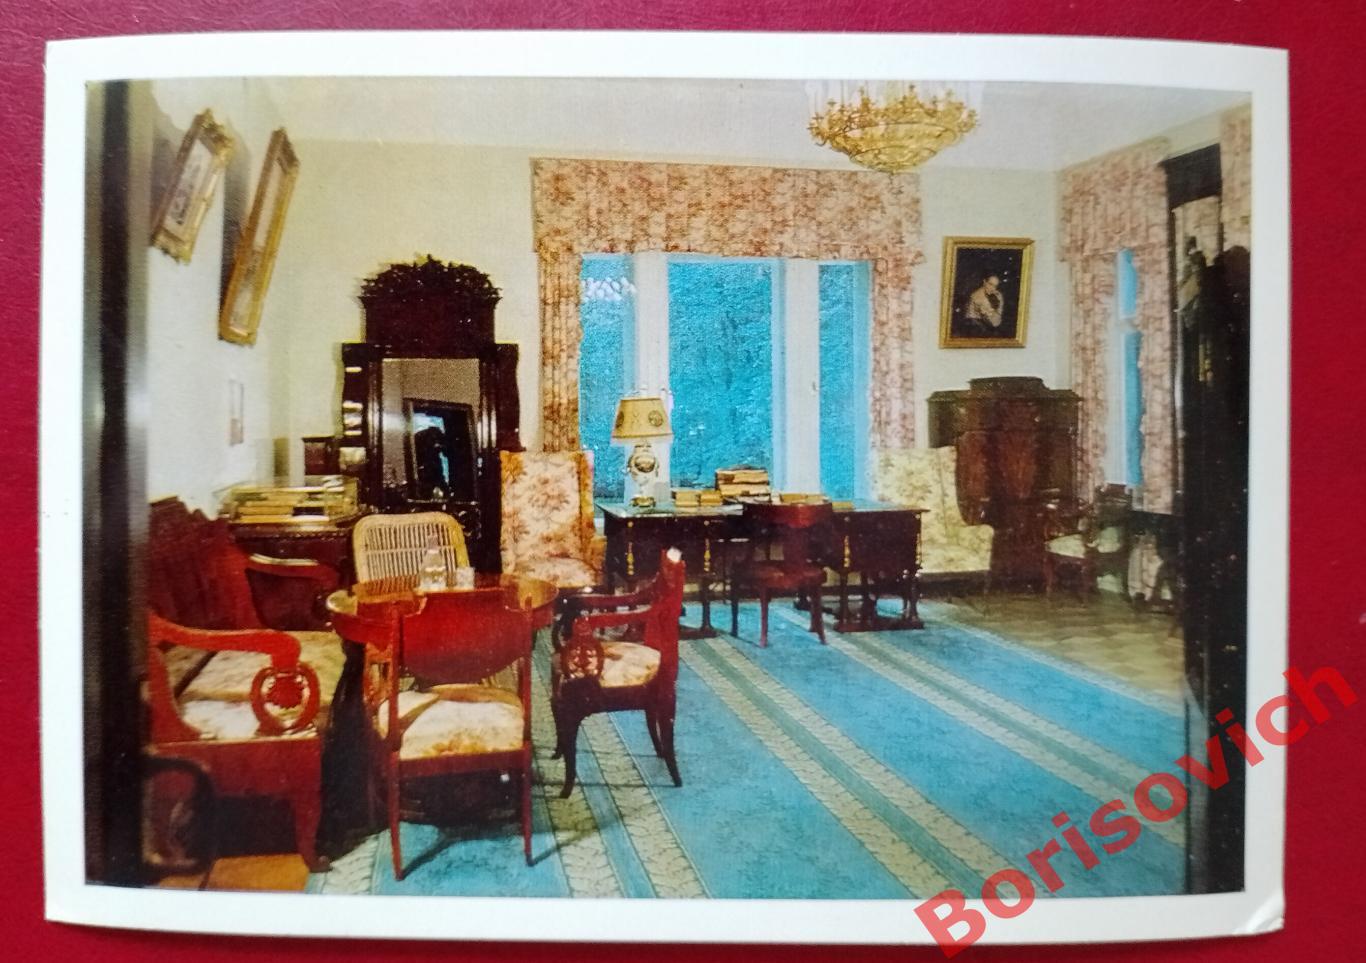 Дом - музей В. И. Ленина в Горках. Рабочий кабинет Ленина и комната Крупской.